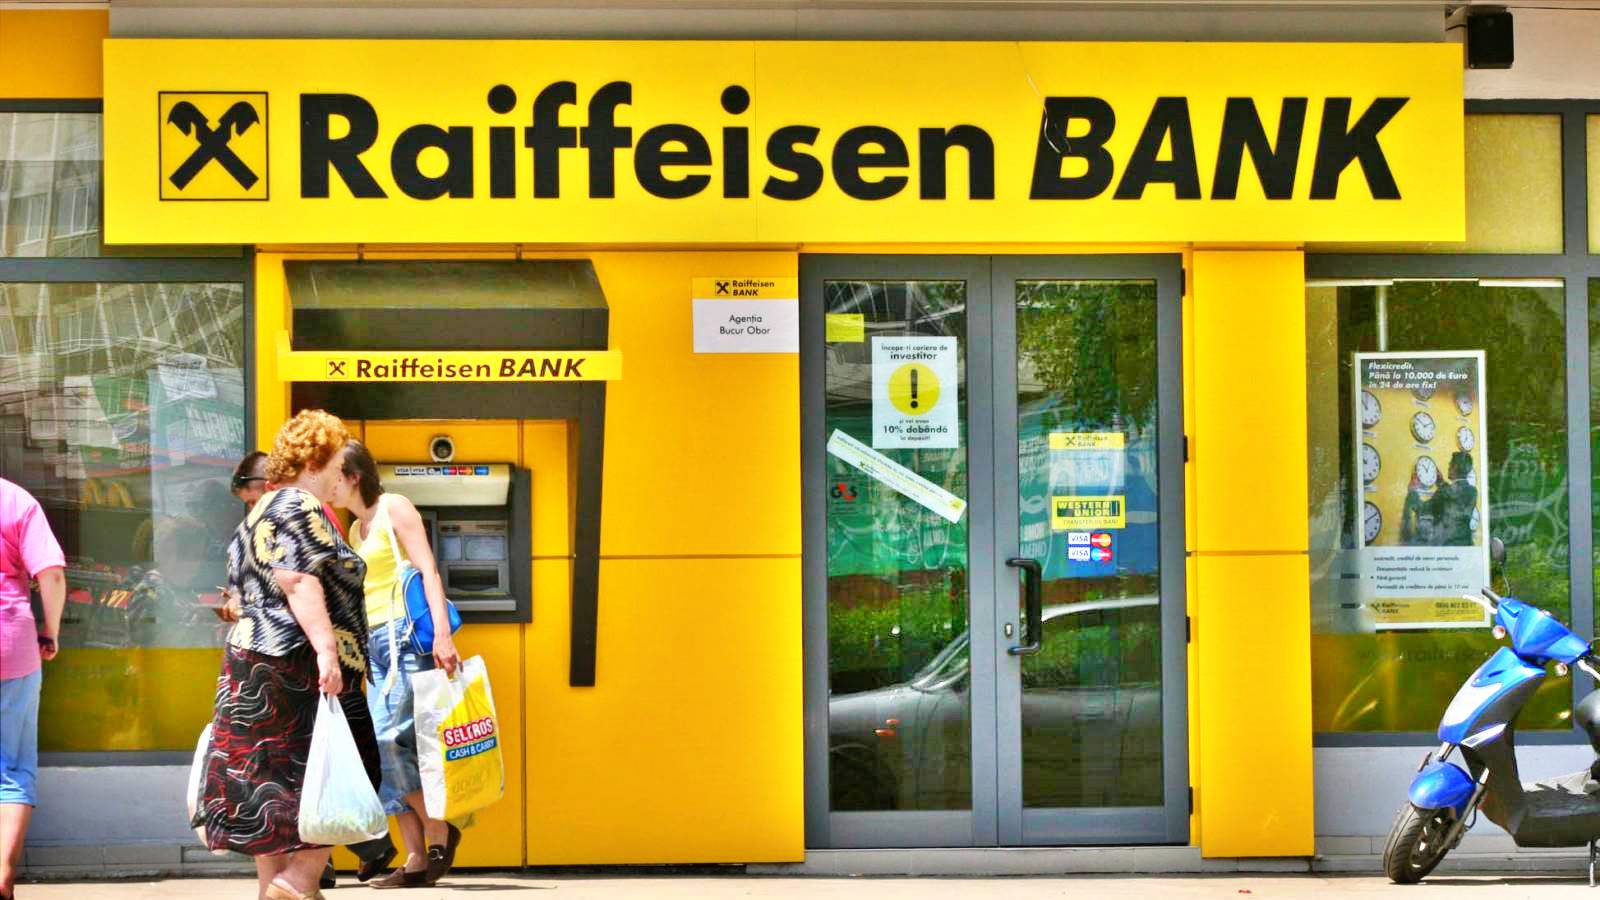 Raiffeisen Bank Anuntul Oficial Gratuit Impreuna VISA Clientilor